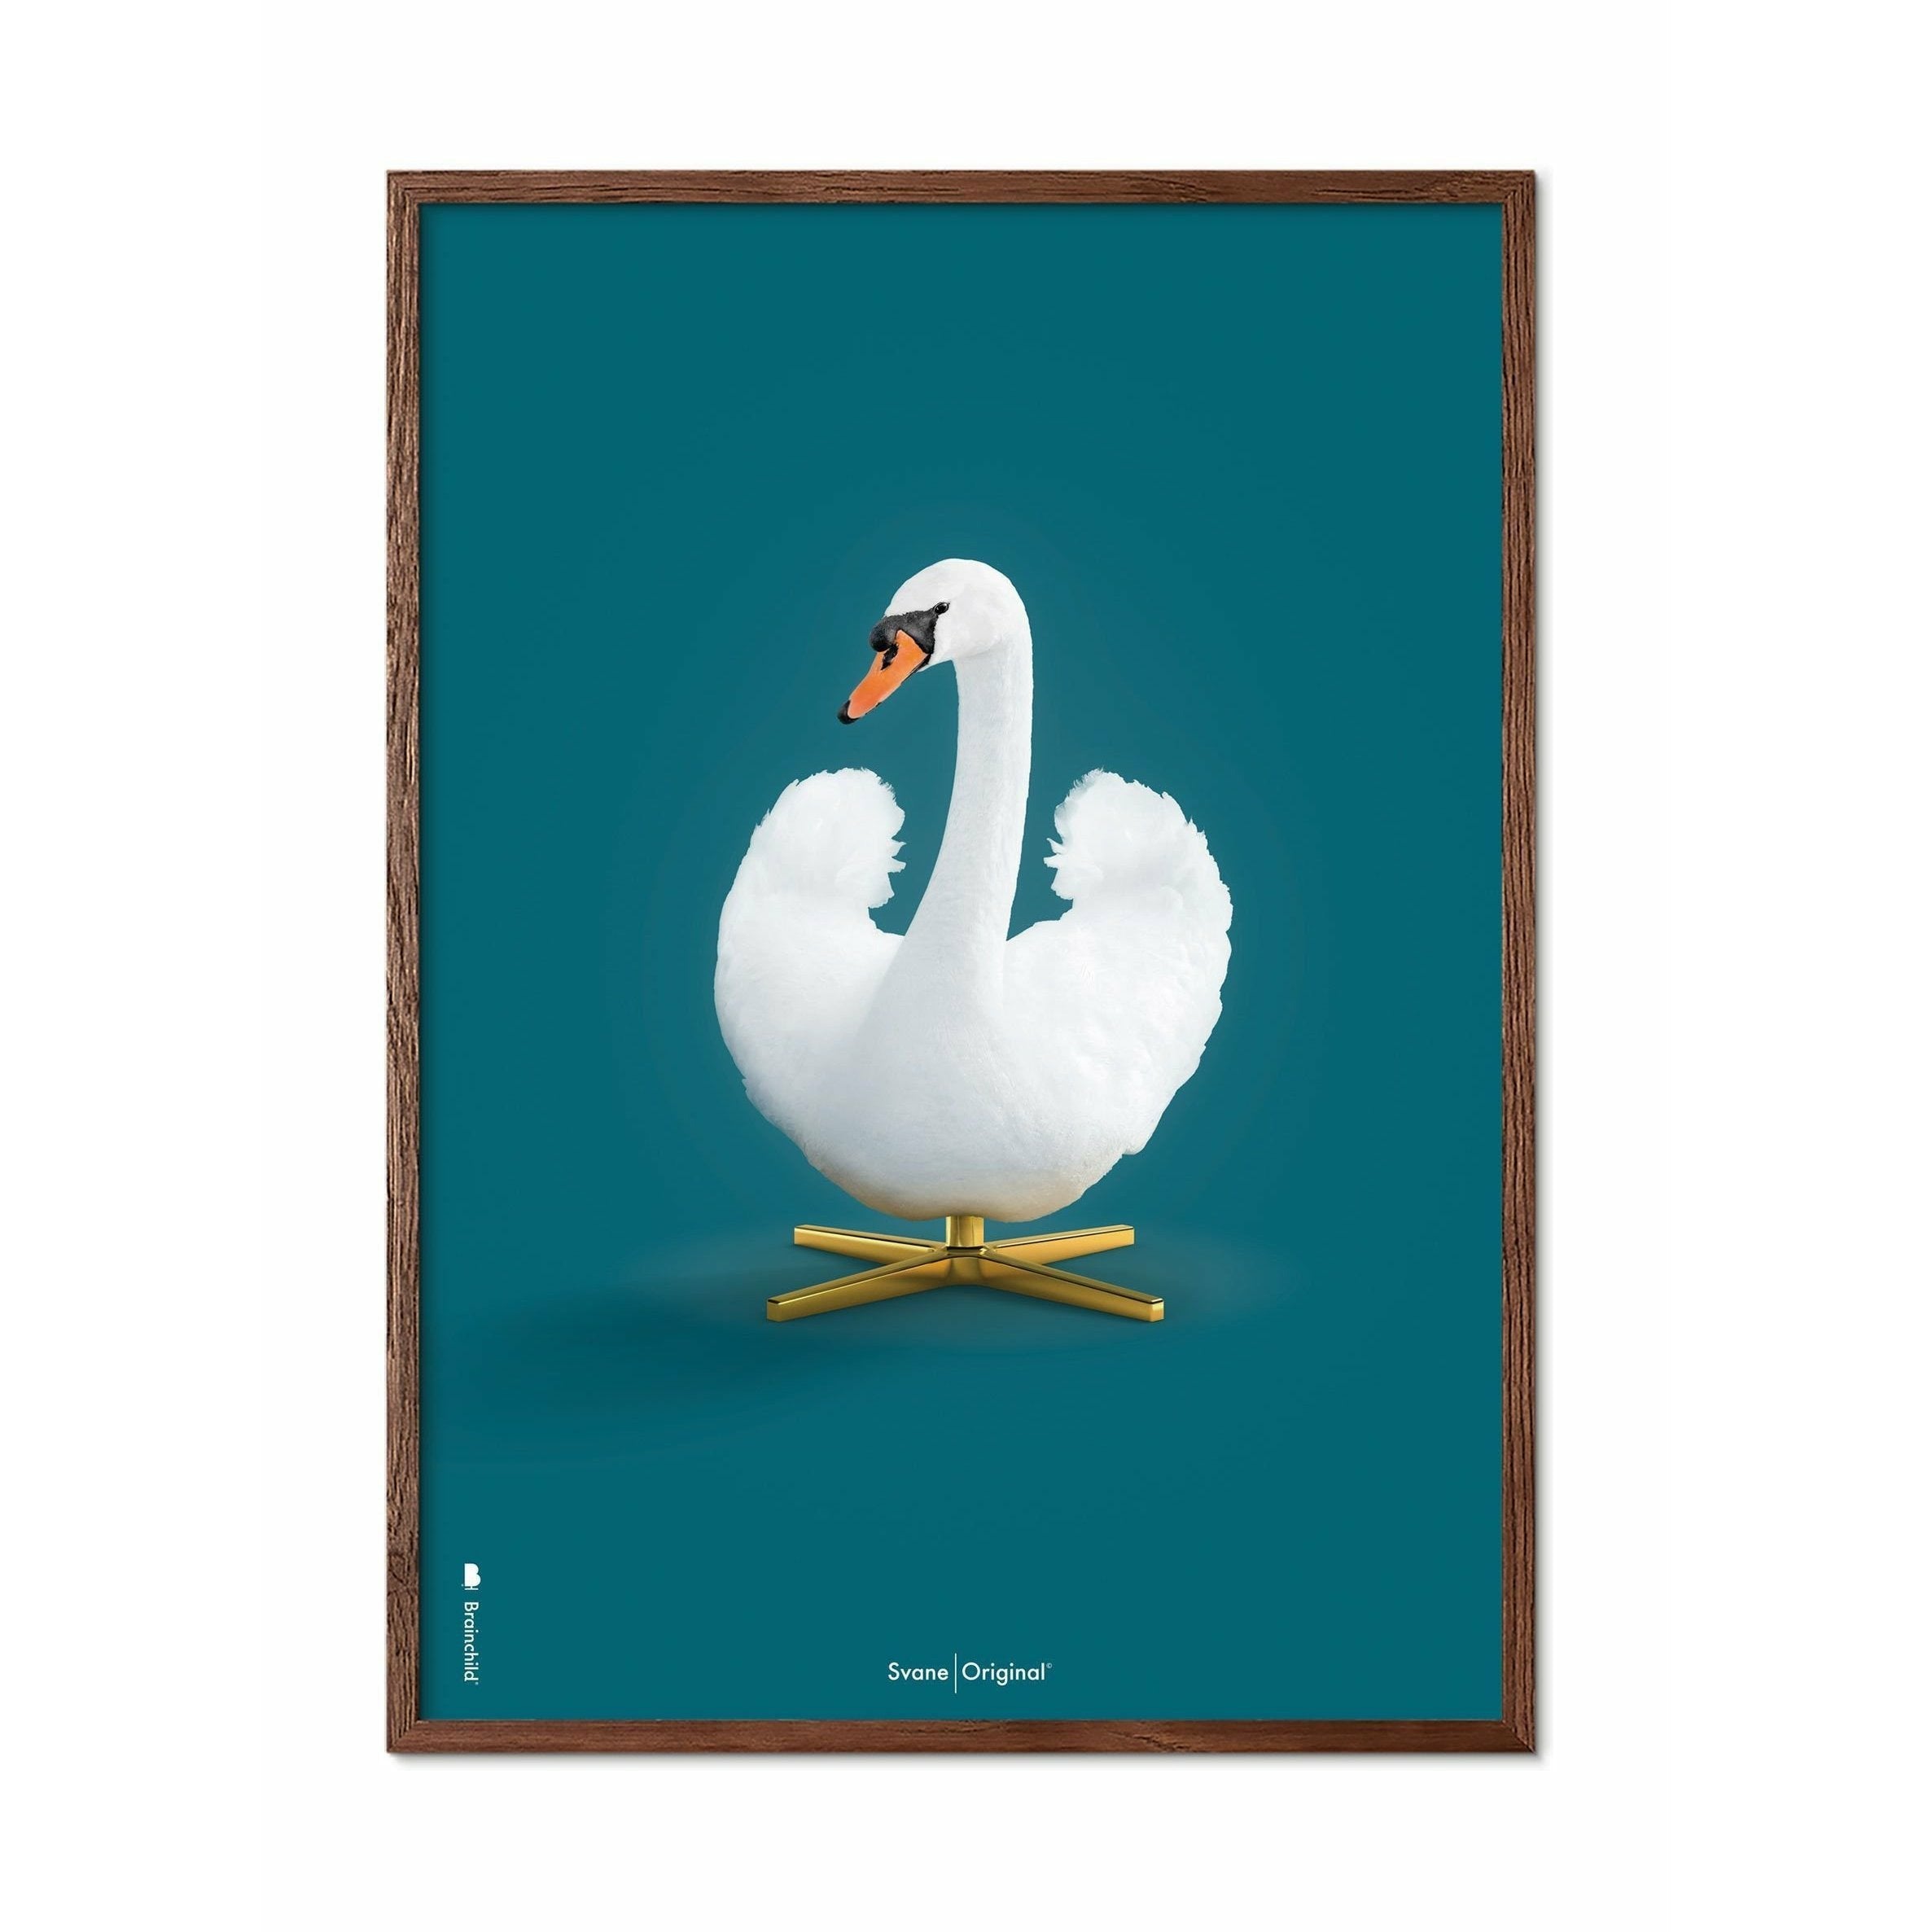 Klasický plakát s labutí mozkem, tmavý dřevěný rám A5, ropné modré pozadí